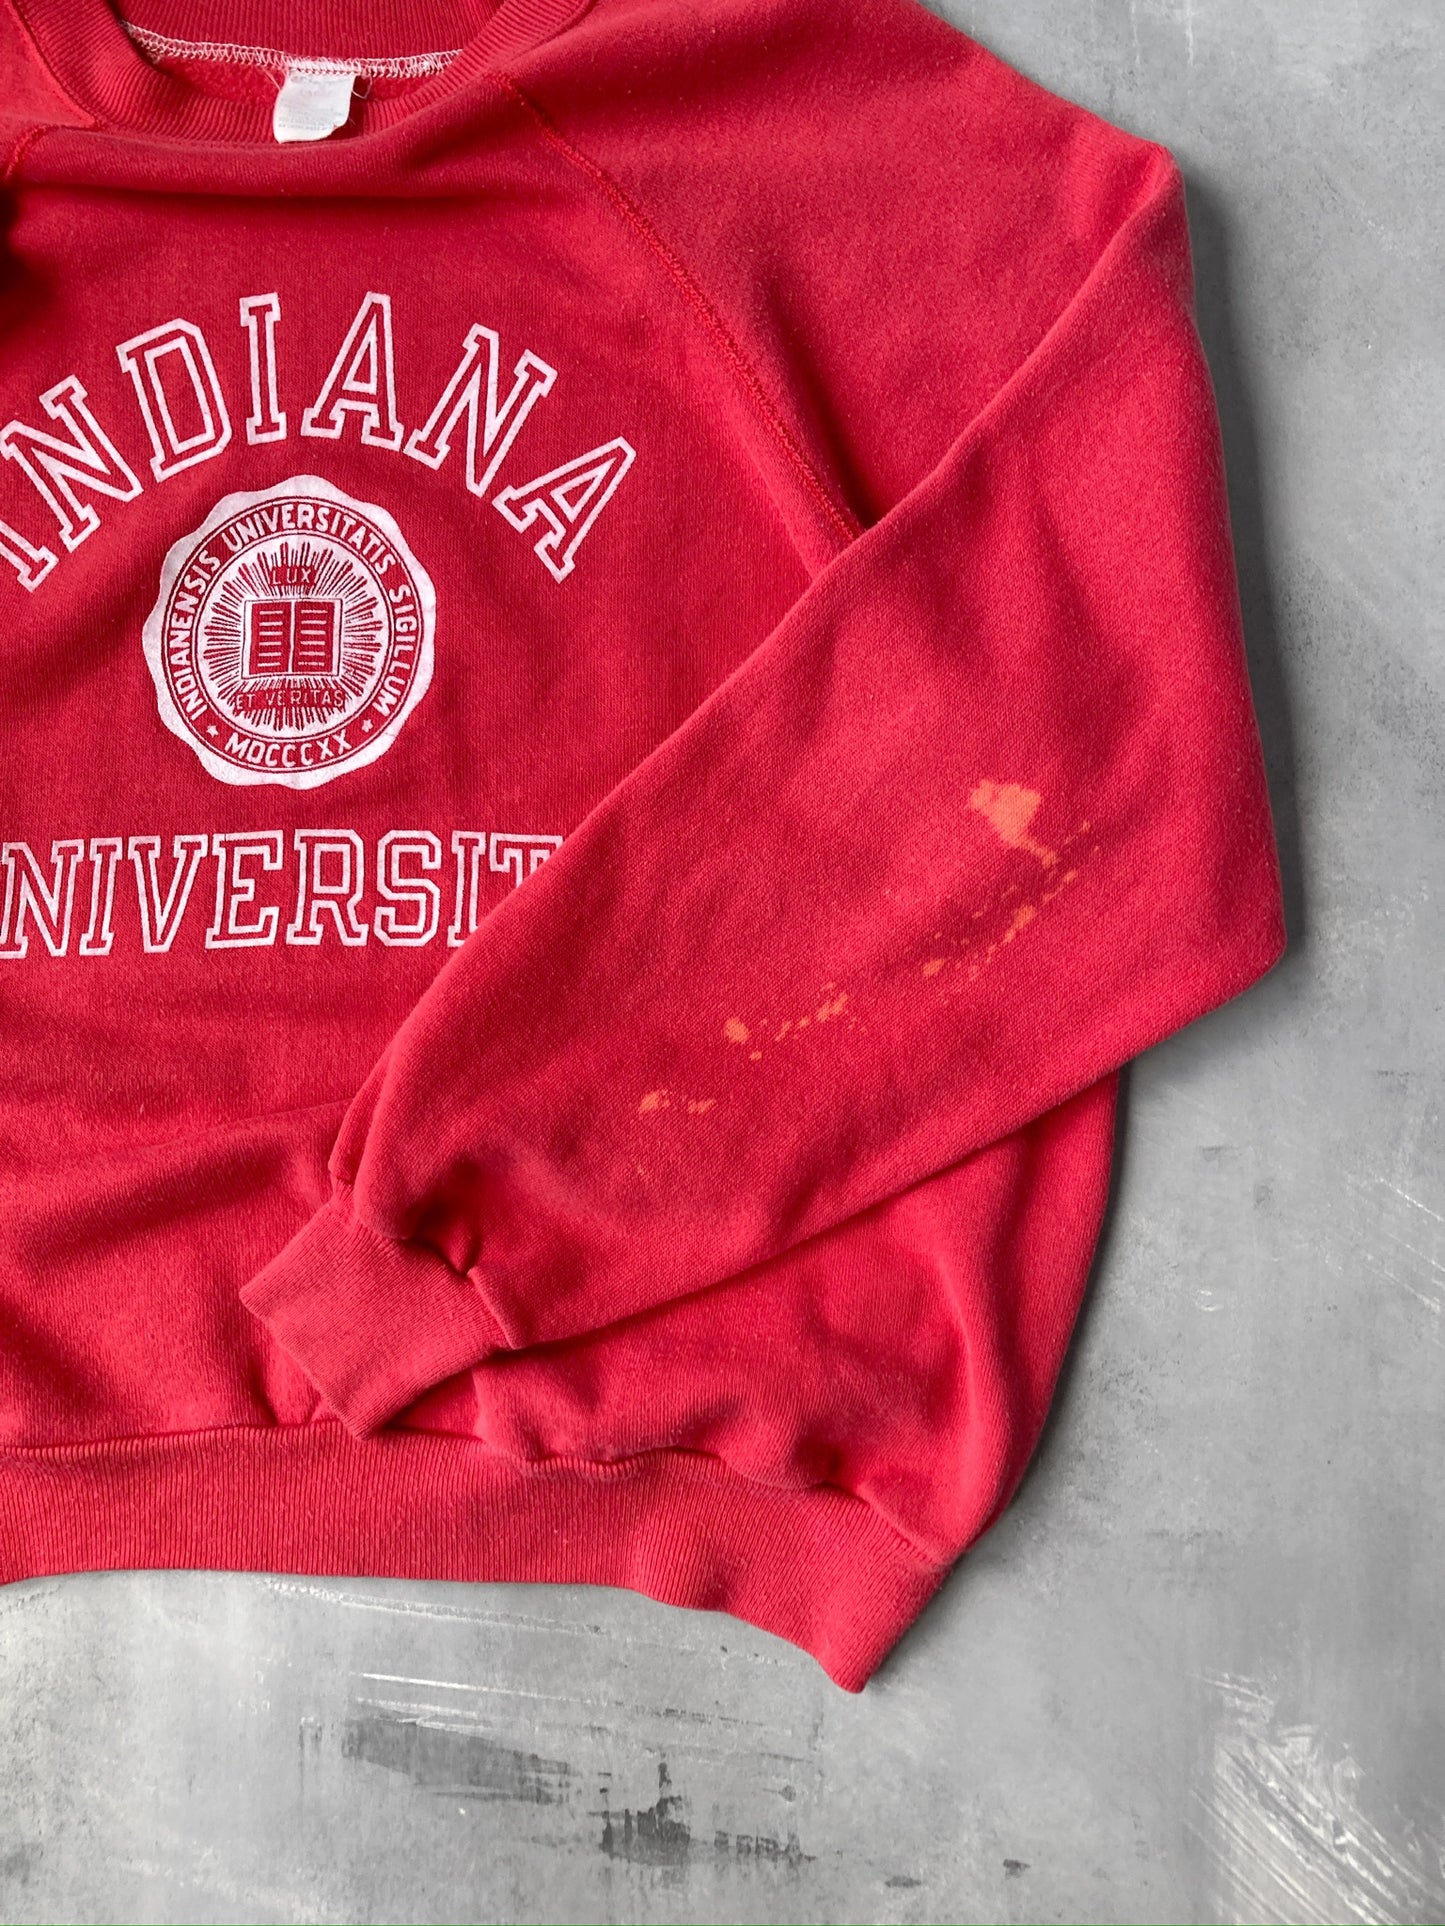 Indiana University Crewneck 80's - Medium / Large